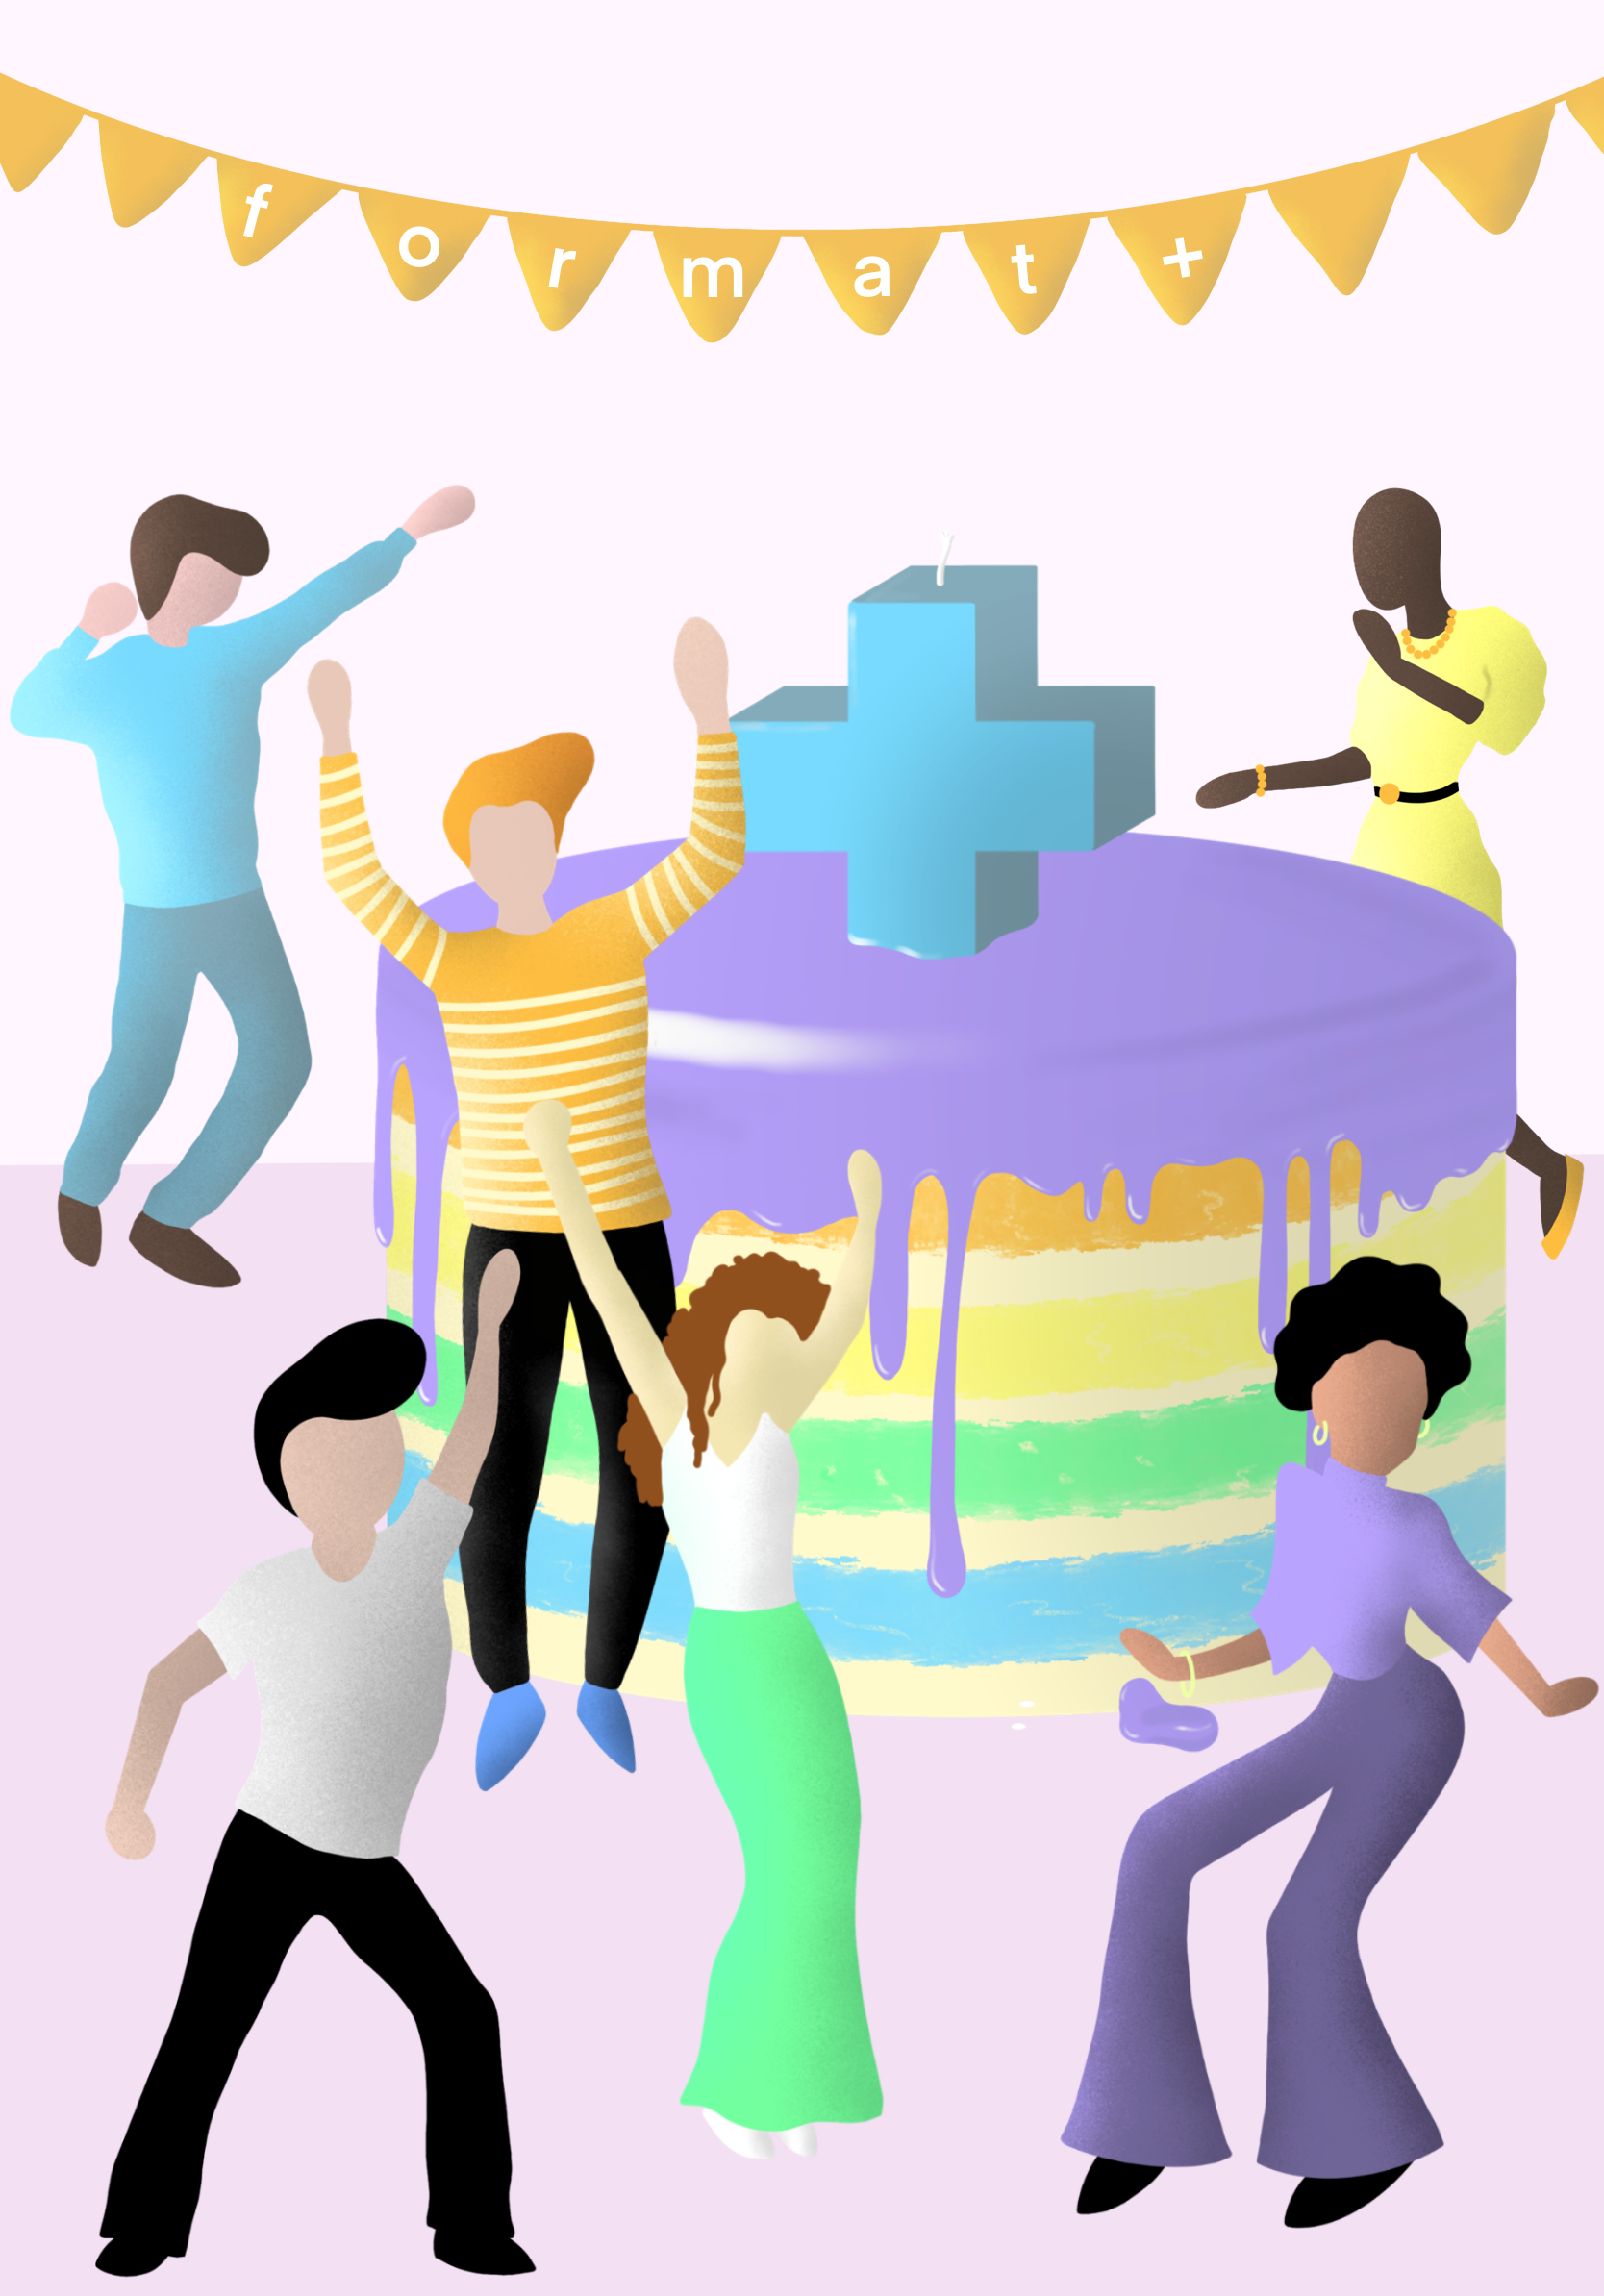 Illustrierte Menschen tanzen um großen Kuchen herum.